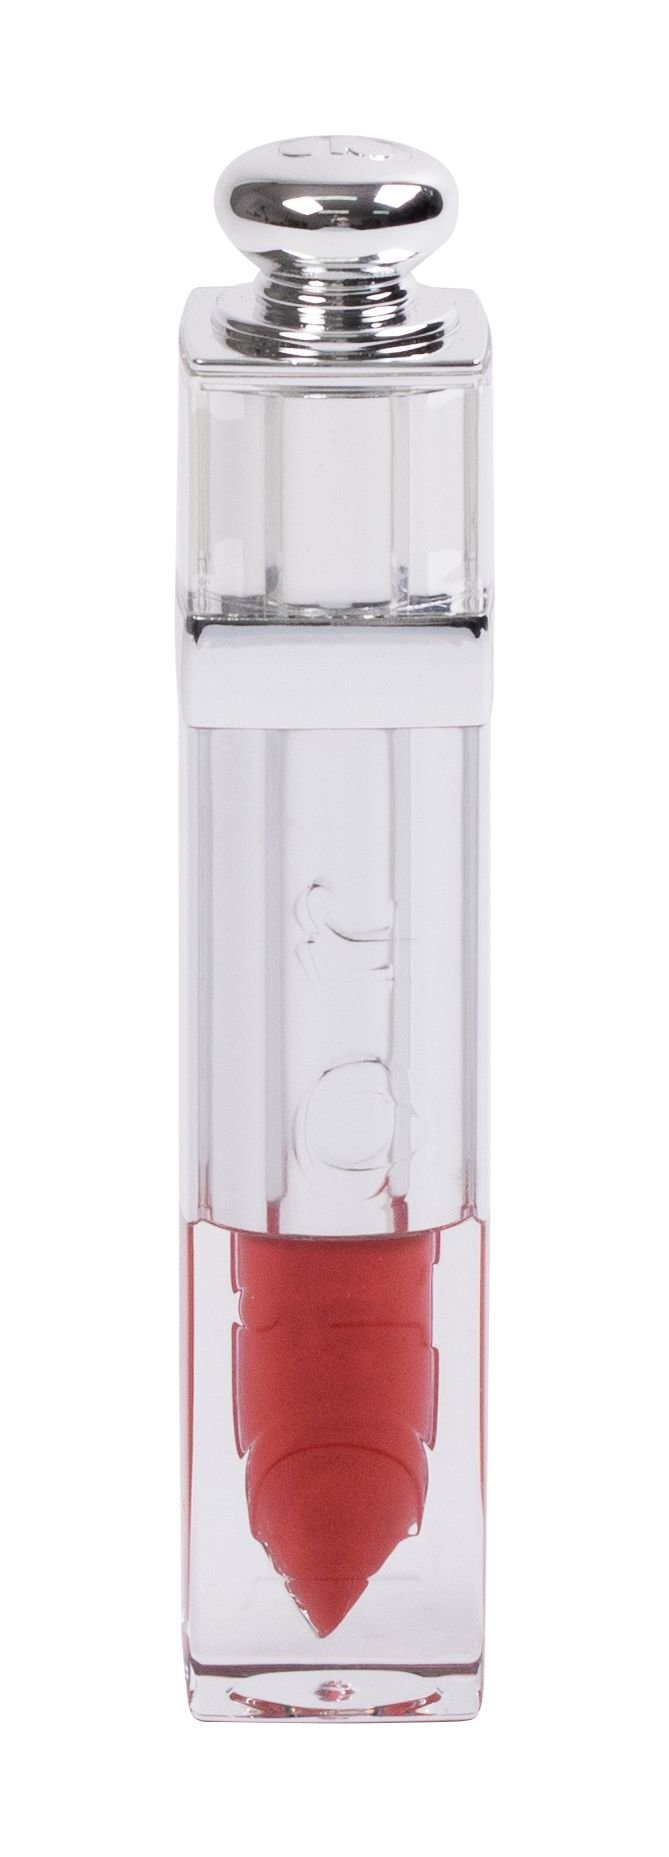 Christian Dior Addict Fluid Stick lūpų blizgesys